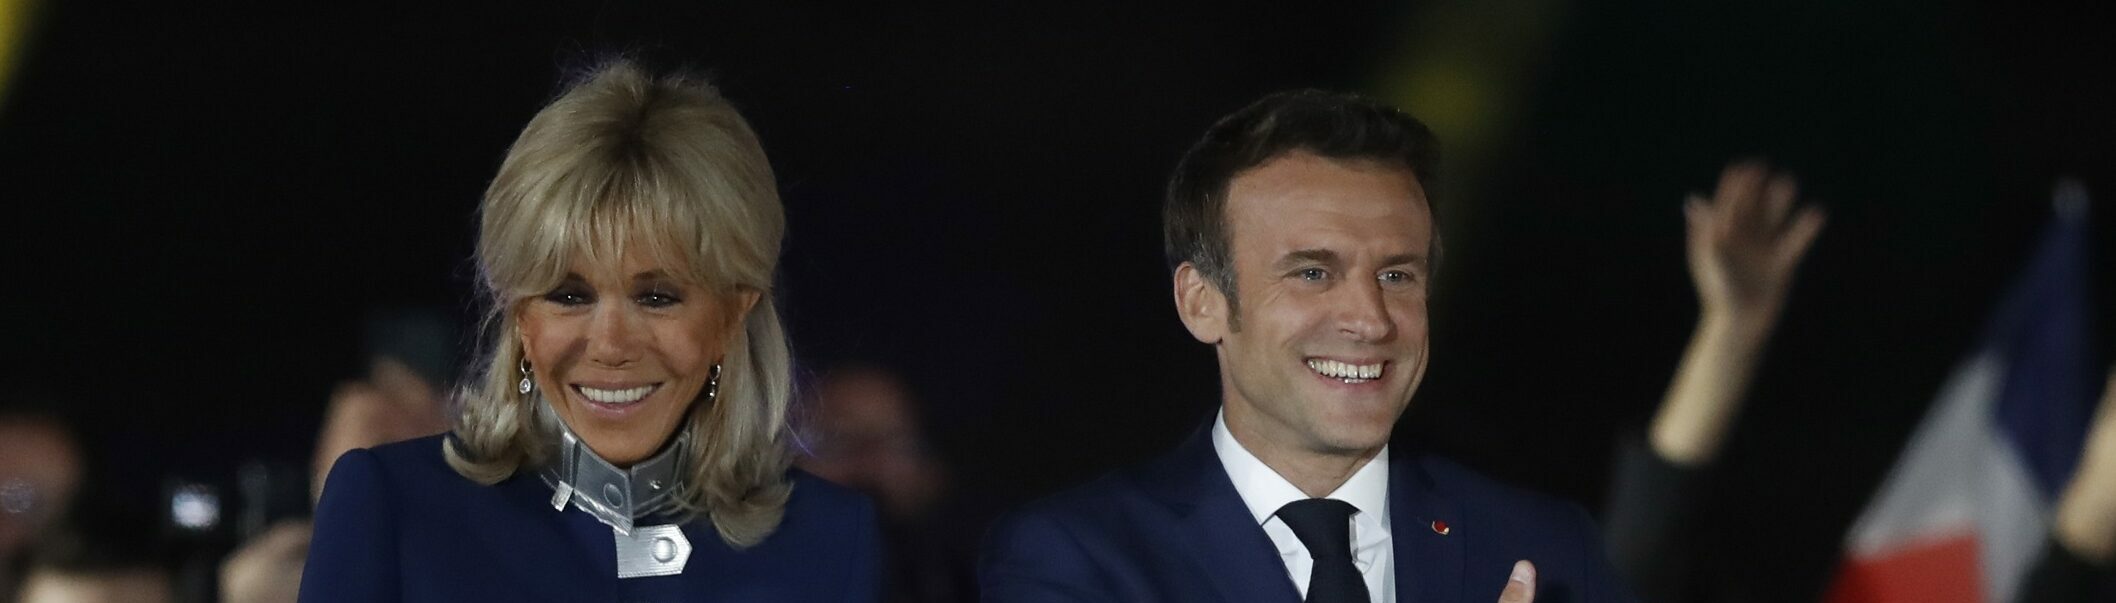 Brigitte Macron de su curiosa historia de amor con Emmanuel a la polémica sobre su sexualidad